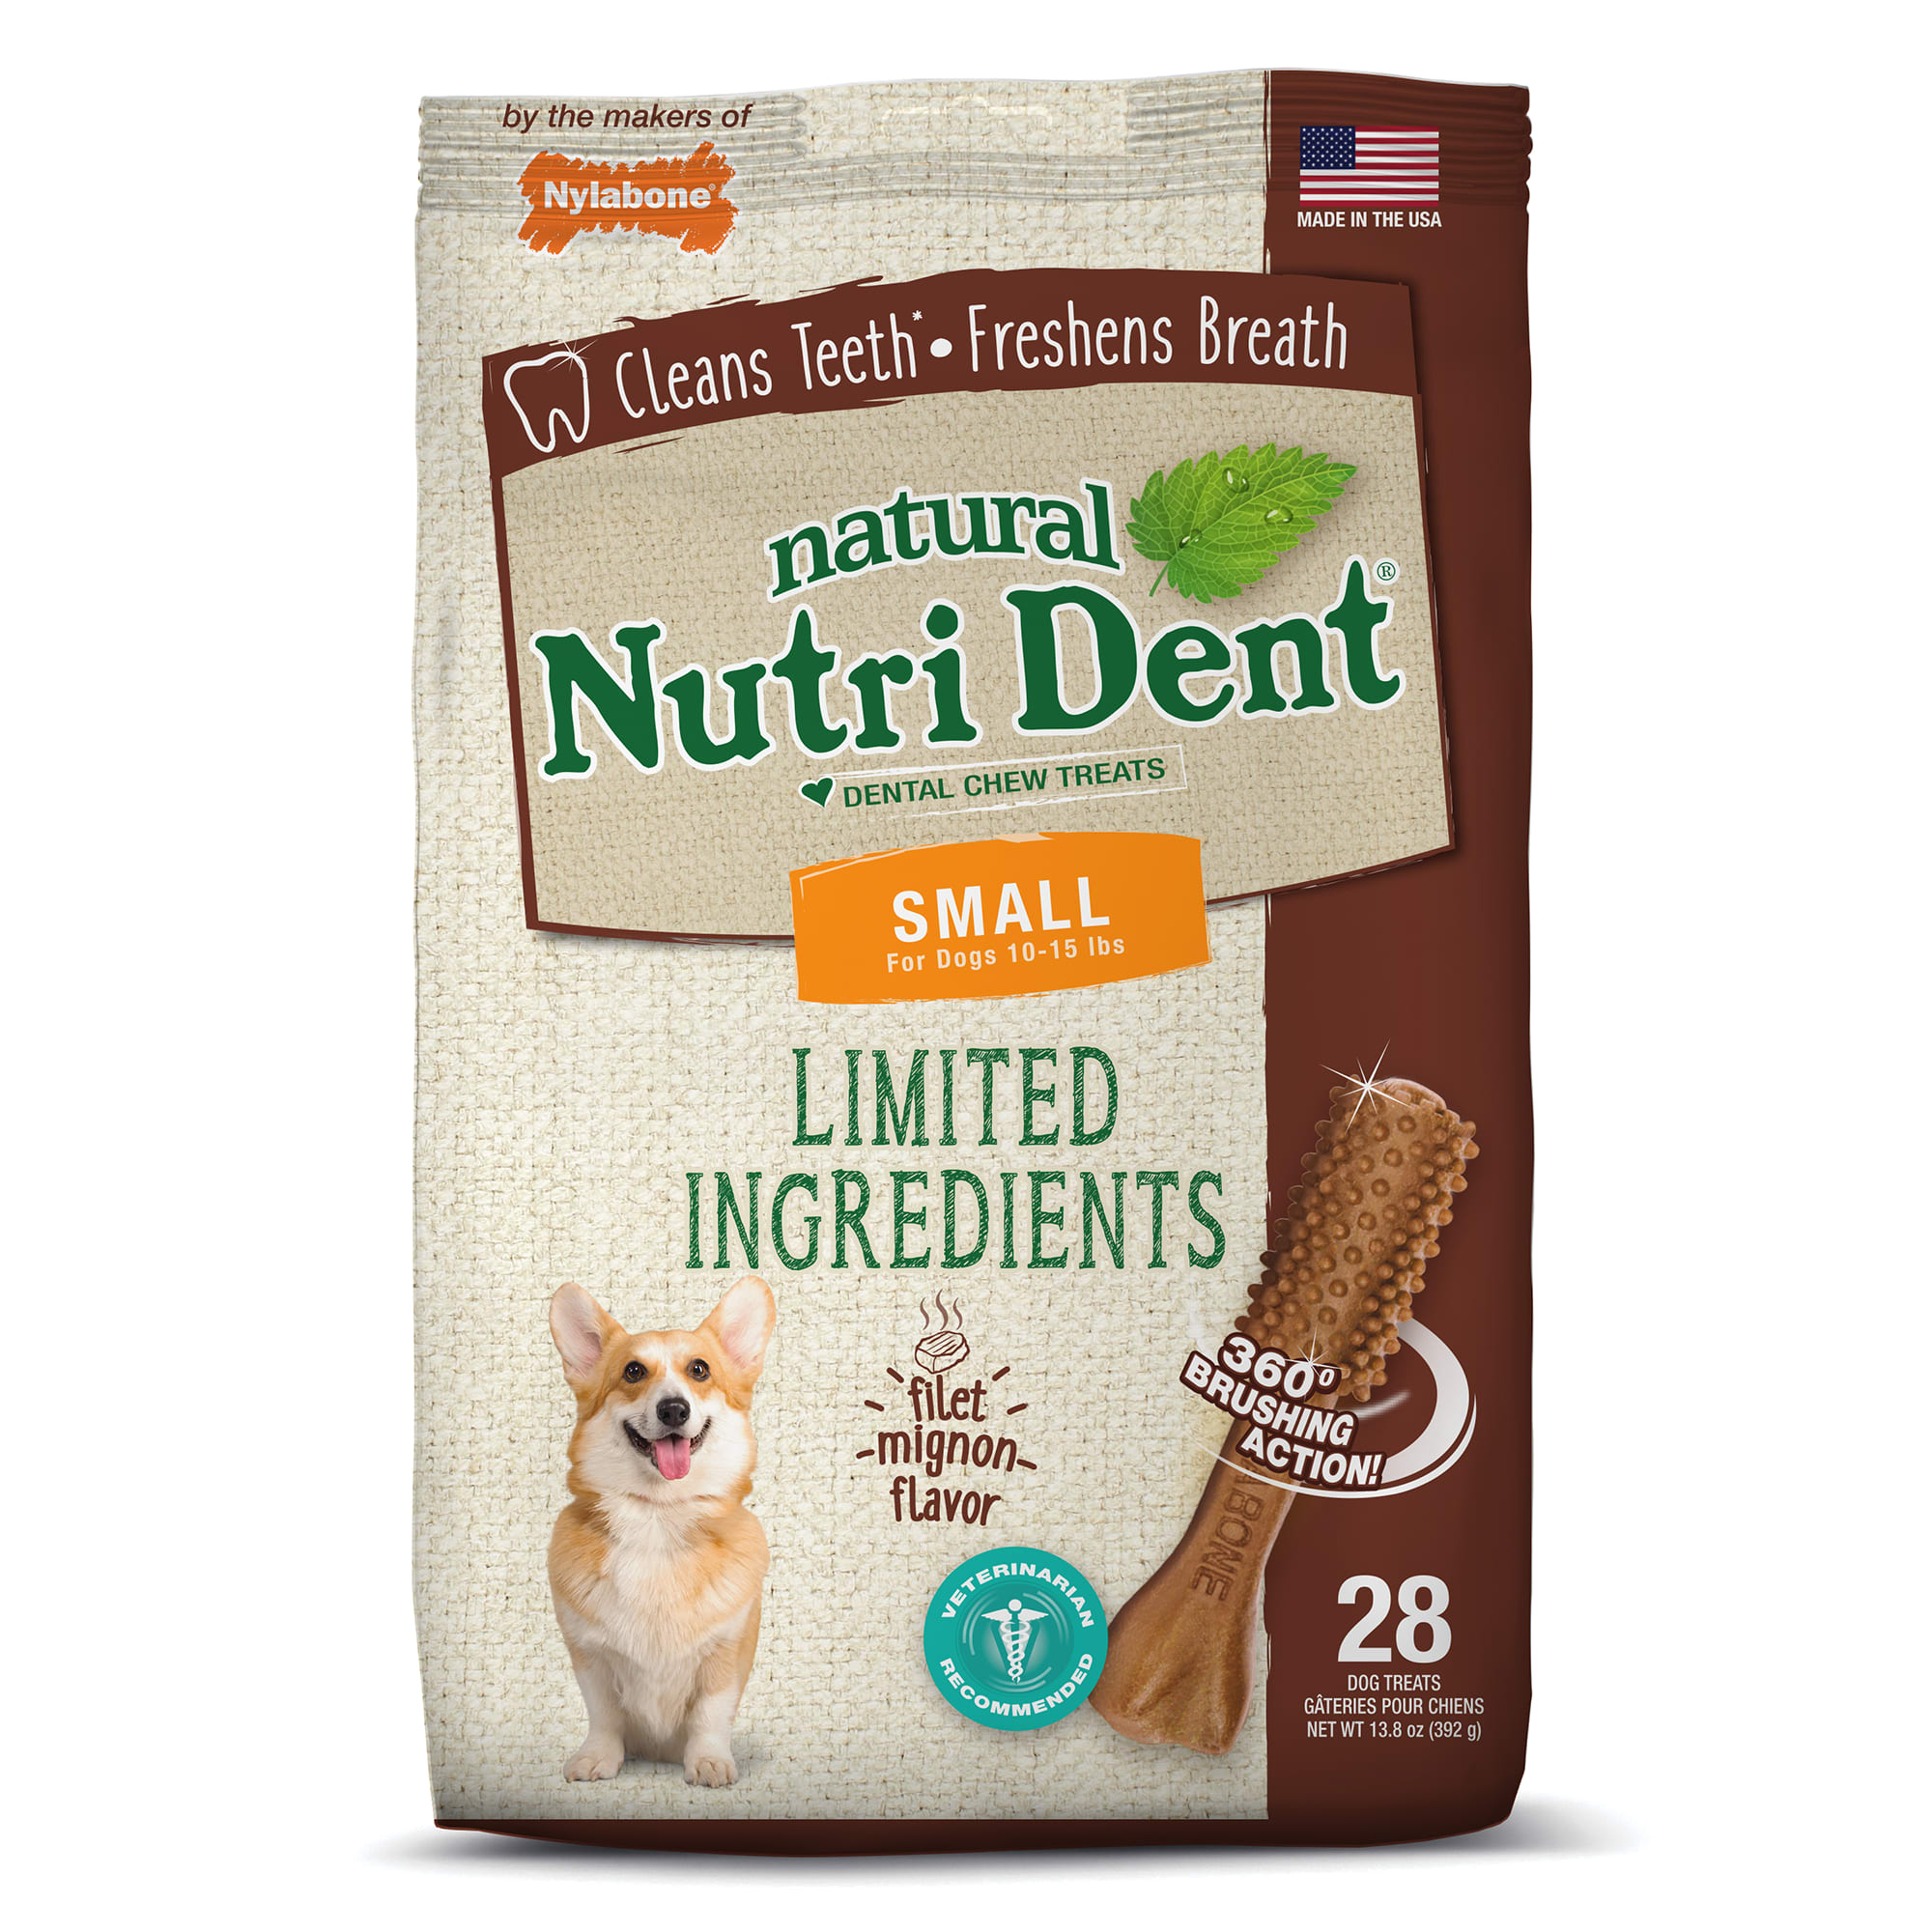 Nylabone Nutri Dent Limited Ingredients 